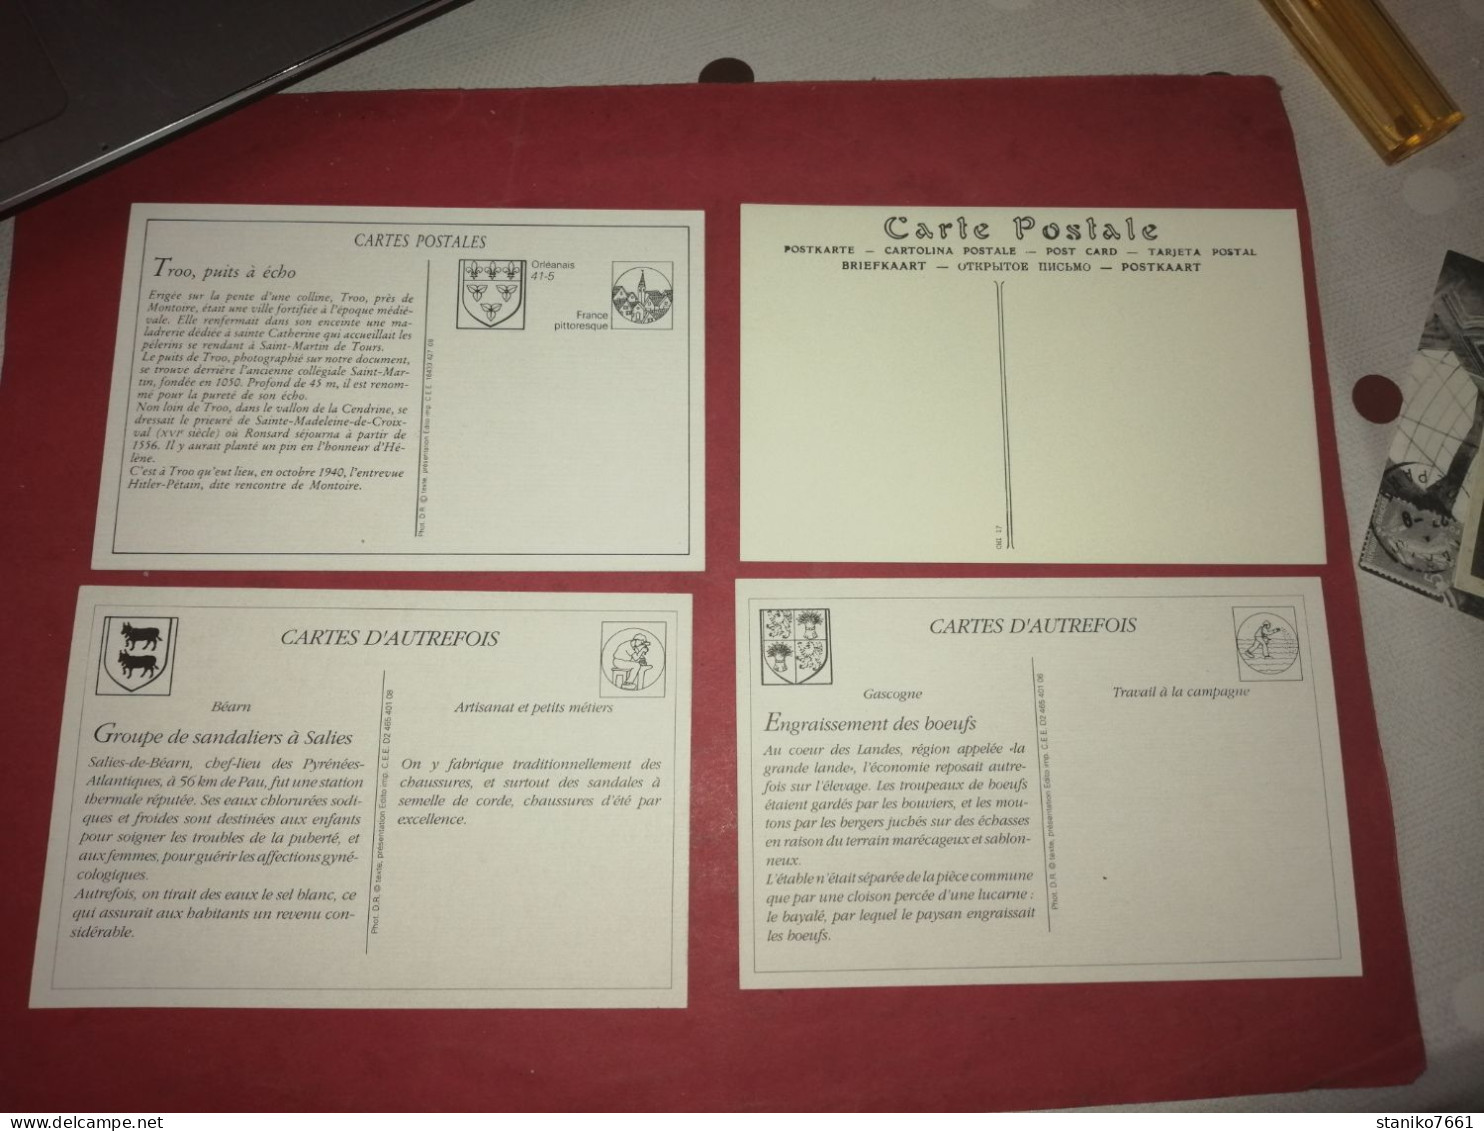 4 Cartes Postales Troo Le Puits à écho Boutigny Tuilerie Salies De Béarn Sandaliers Landes Engraissement Des Bœufs - Viehzucht